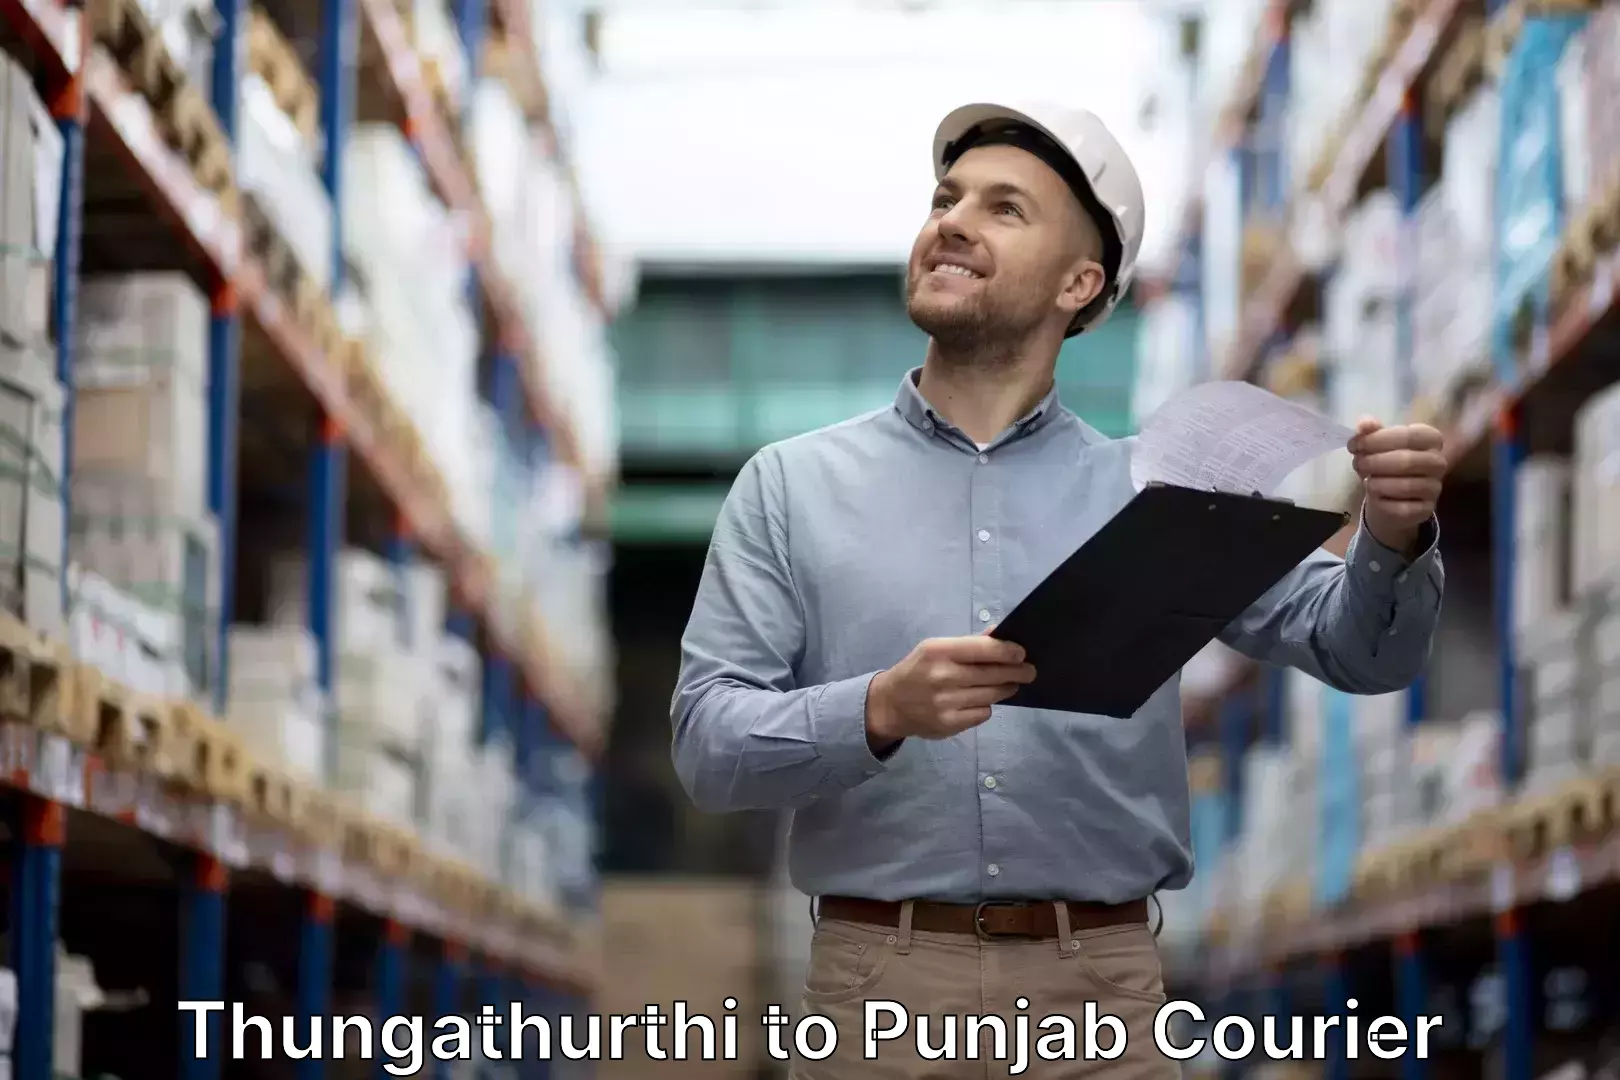 Luggage shipping discounts Thungathurthi to Punjab